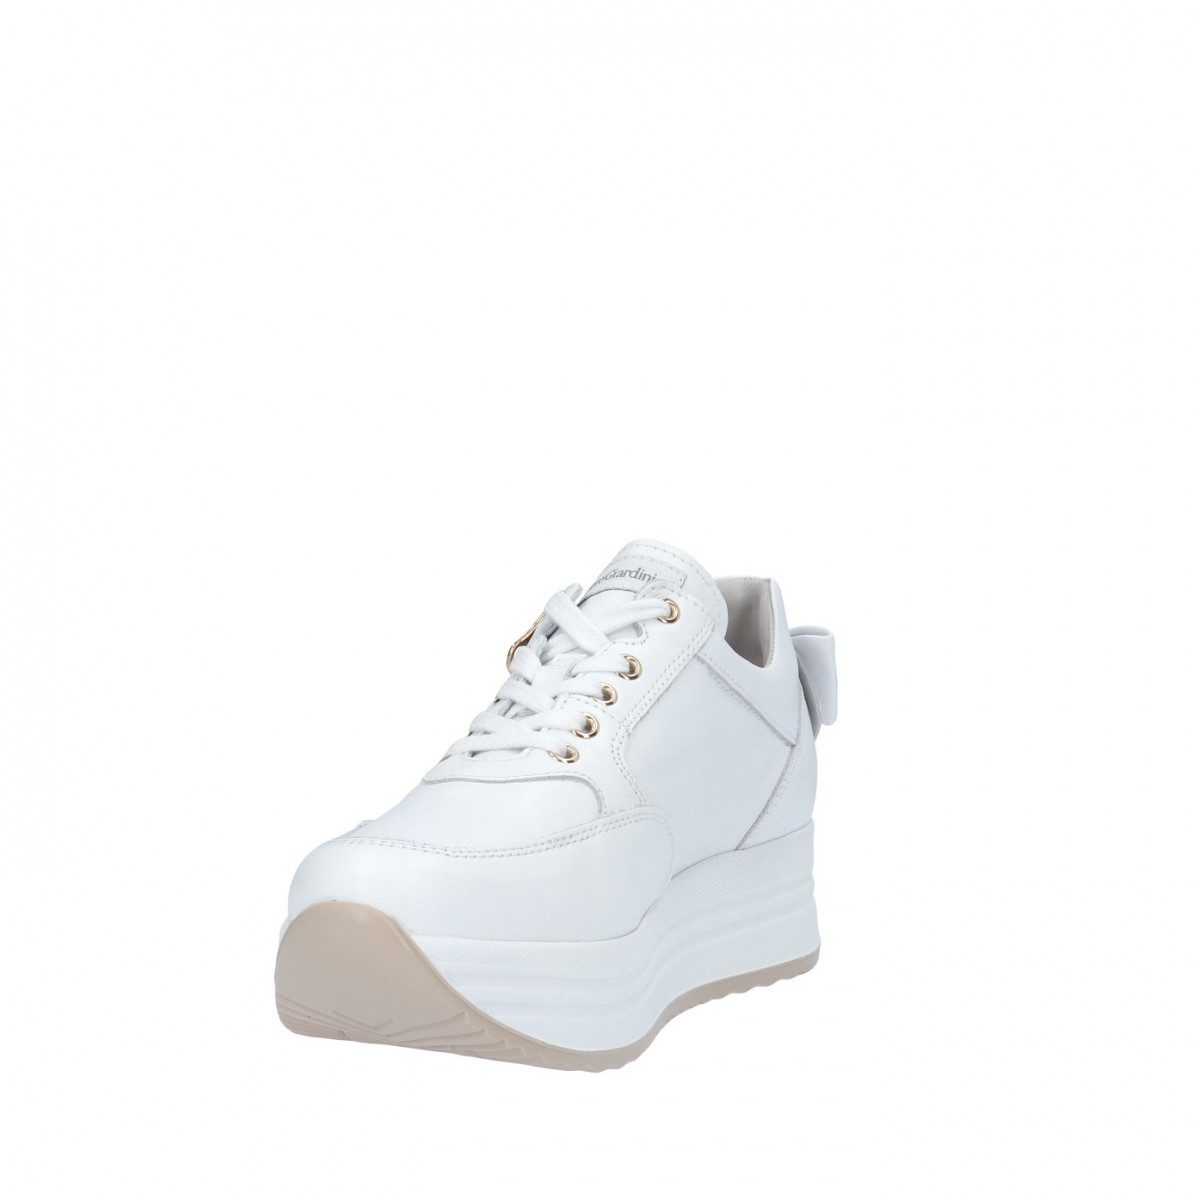 Nerogiardini Sneaker Bianco Gomma E306371D